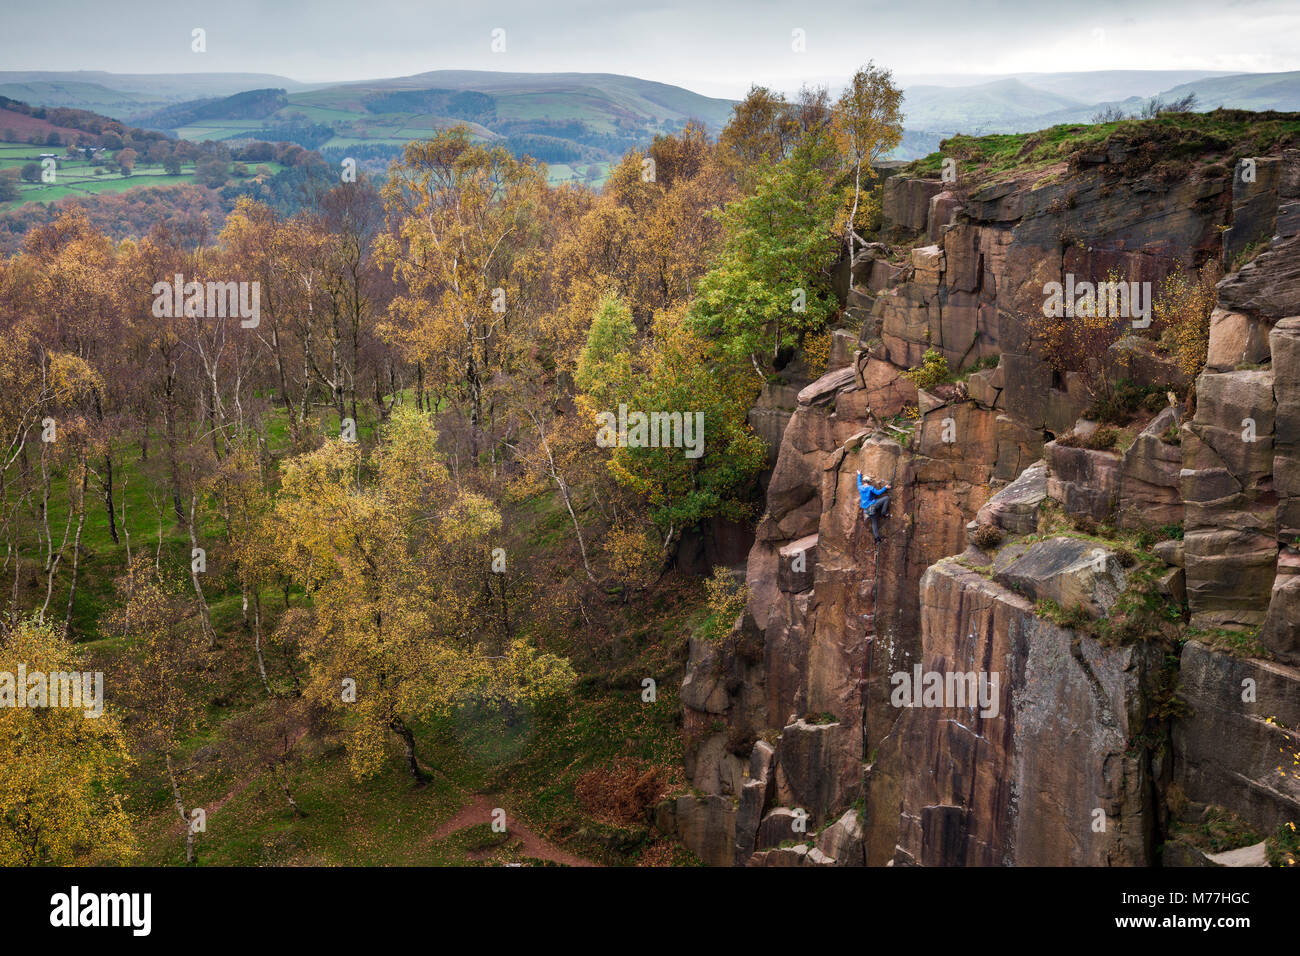 Ein Kletterer steigt eine Felswand von historischen und der Gewinnung von Steinen und Erden in Bole hill Steinbruch an einem Herbsttag in den Peak District, Derbyshire, England, UK gebildet Stockfoto